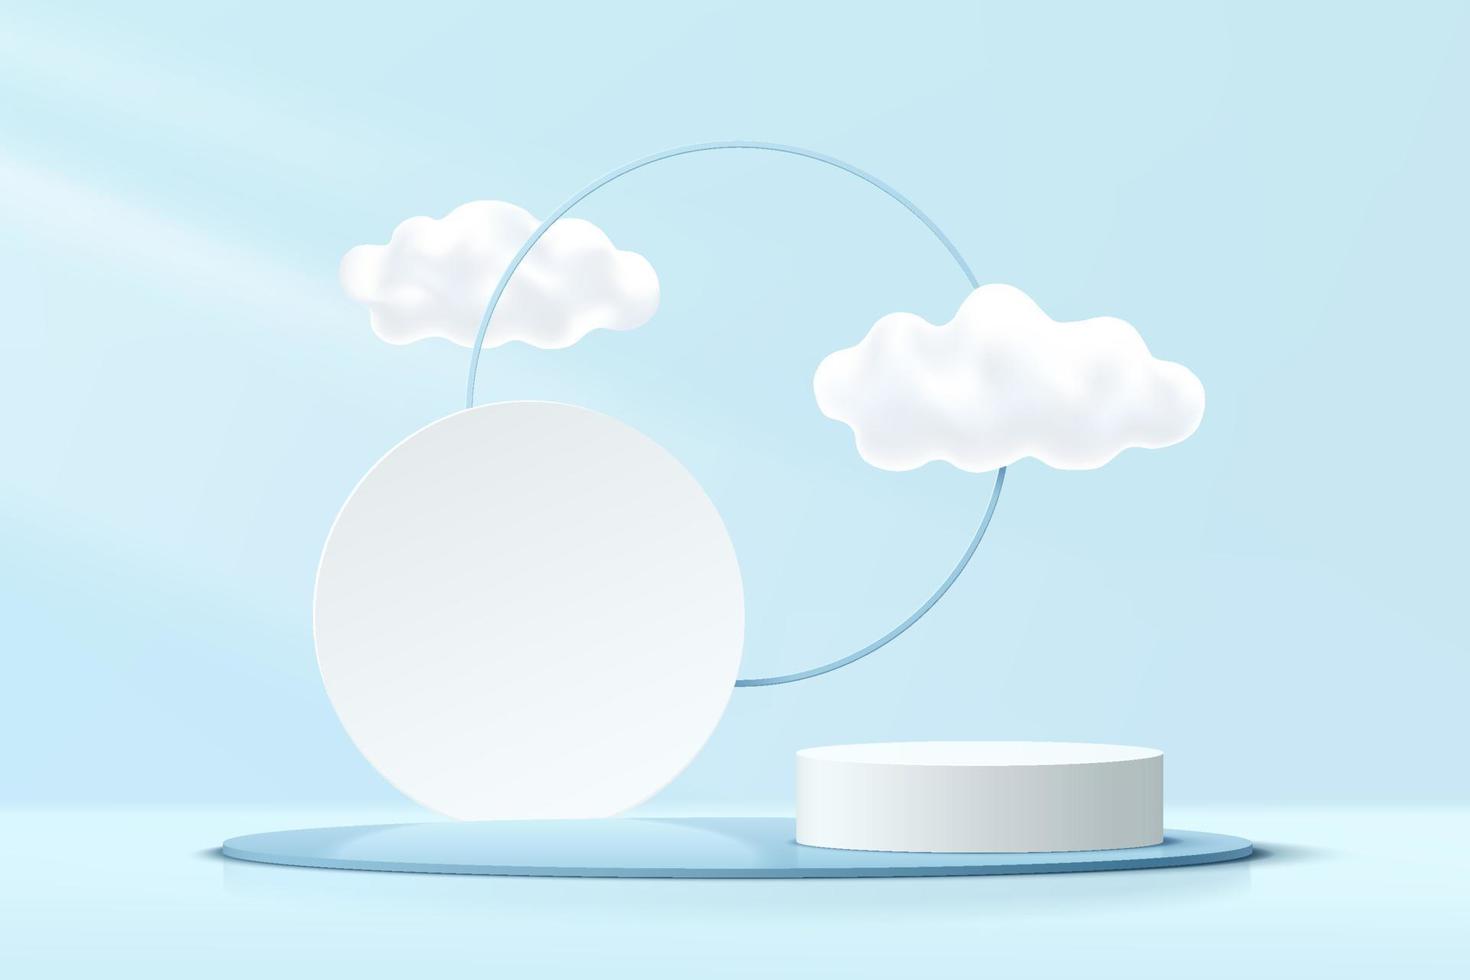 podium de piédestal de cylindre bleu, blanc abstrait 3d avec ciel nuageux et fond de cercle géométrique. scène murale minimale bleu pastel. plate-forme géométrique de rendu vectoriel pour la présentation de l'affichage du produit.